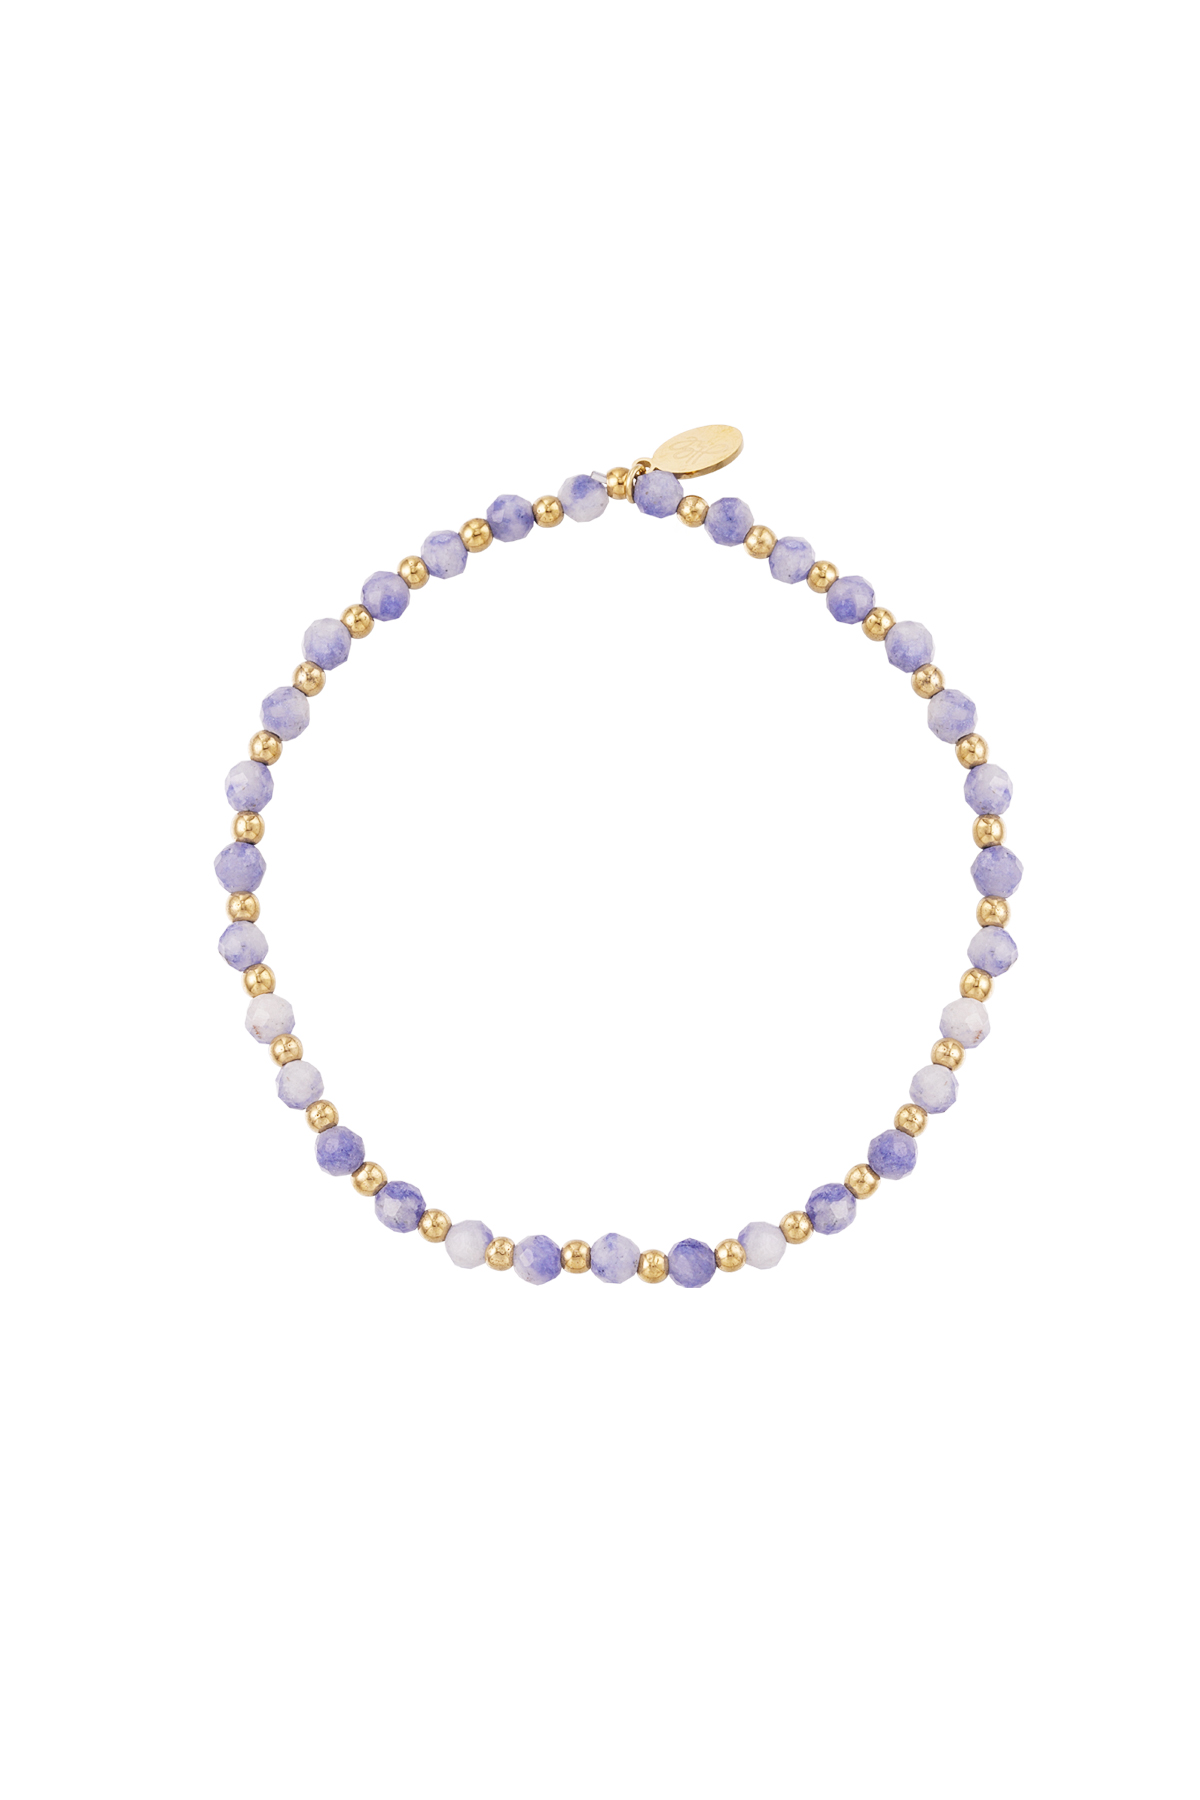 Bleu & Or / Bracelet perlé - violet clair/doré Image3